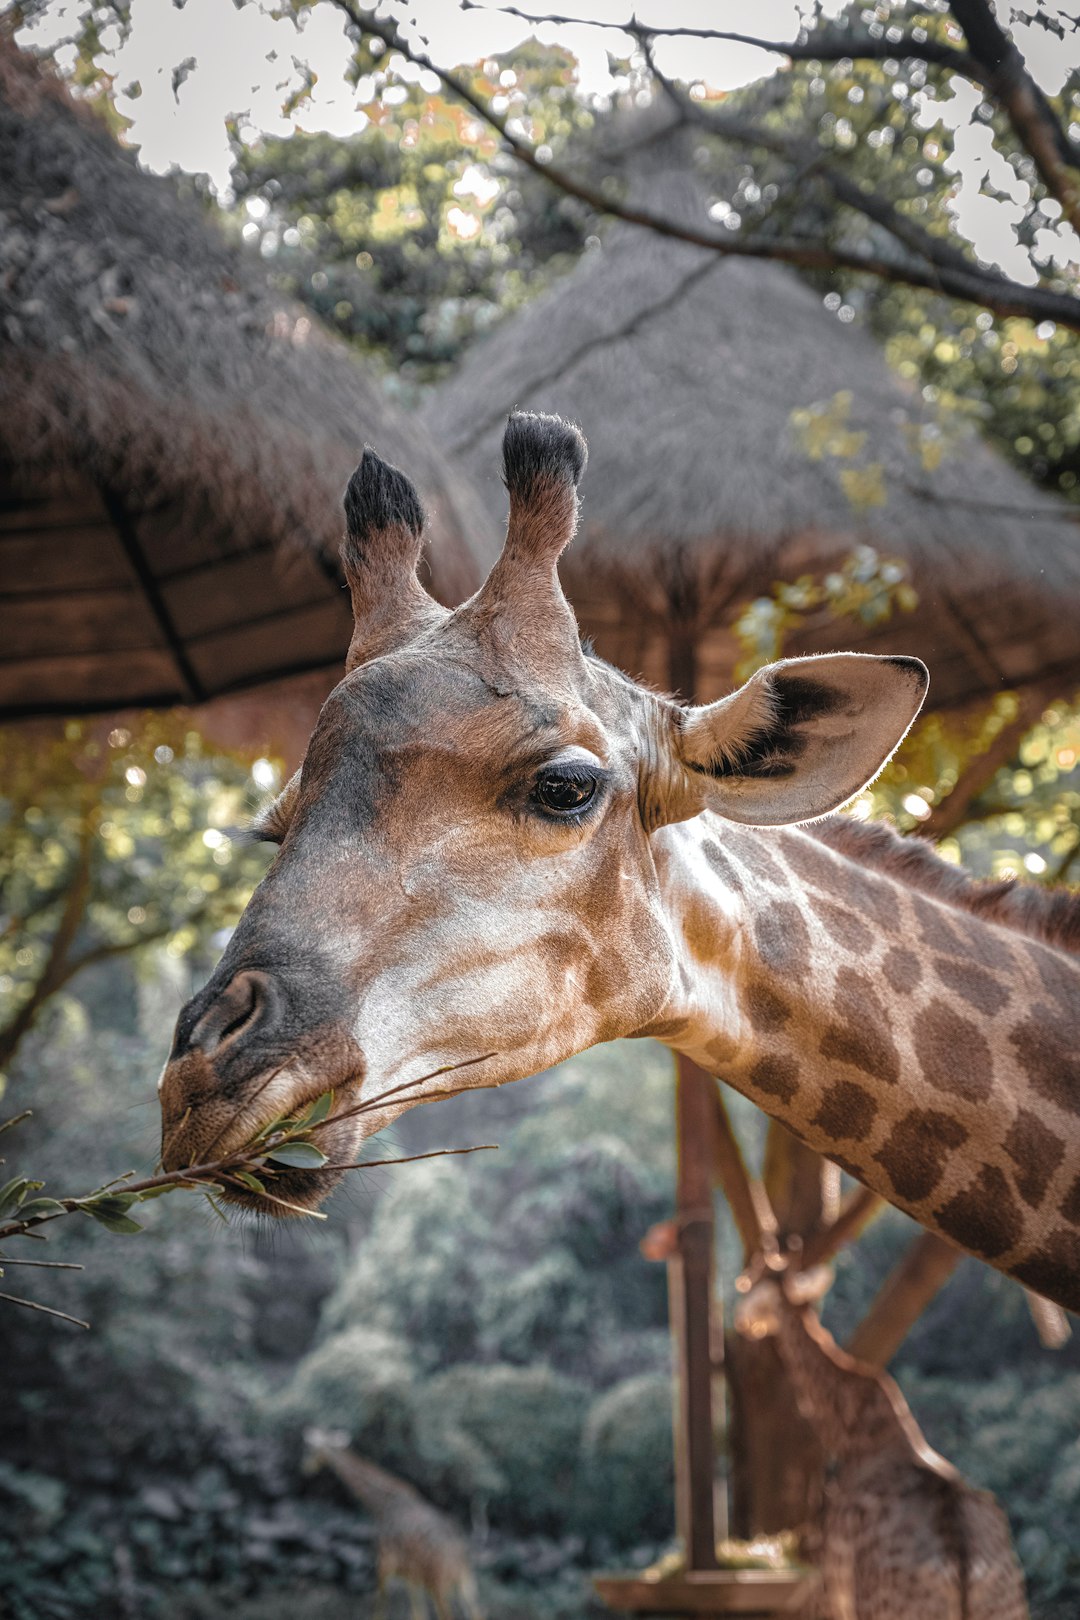 eating giraffe